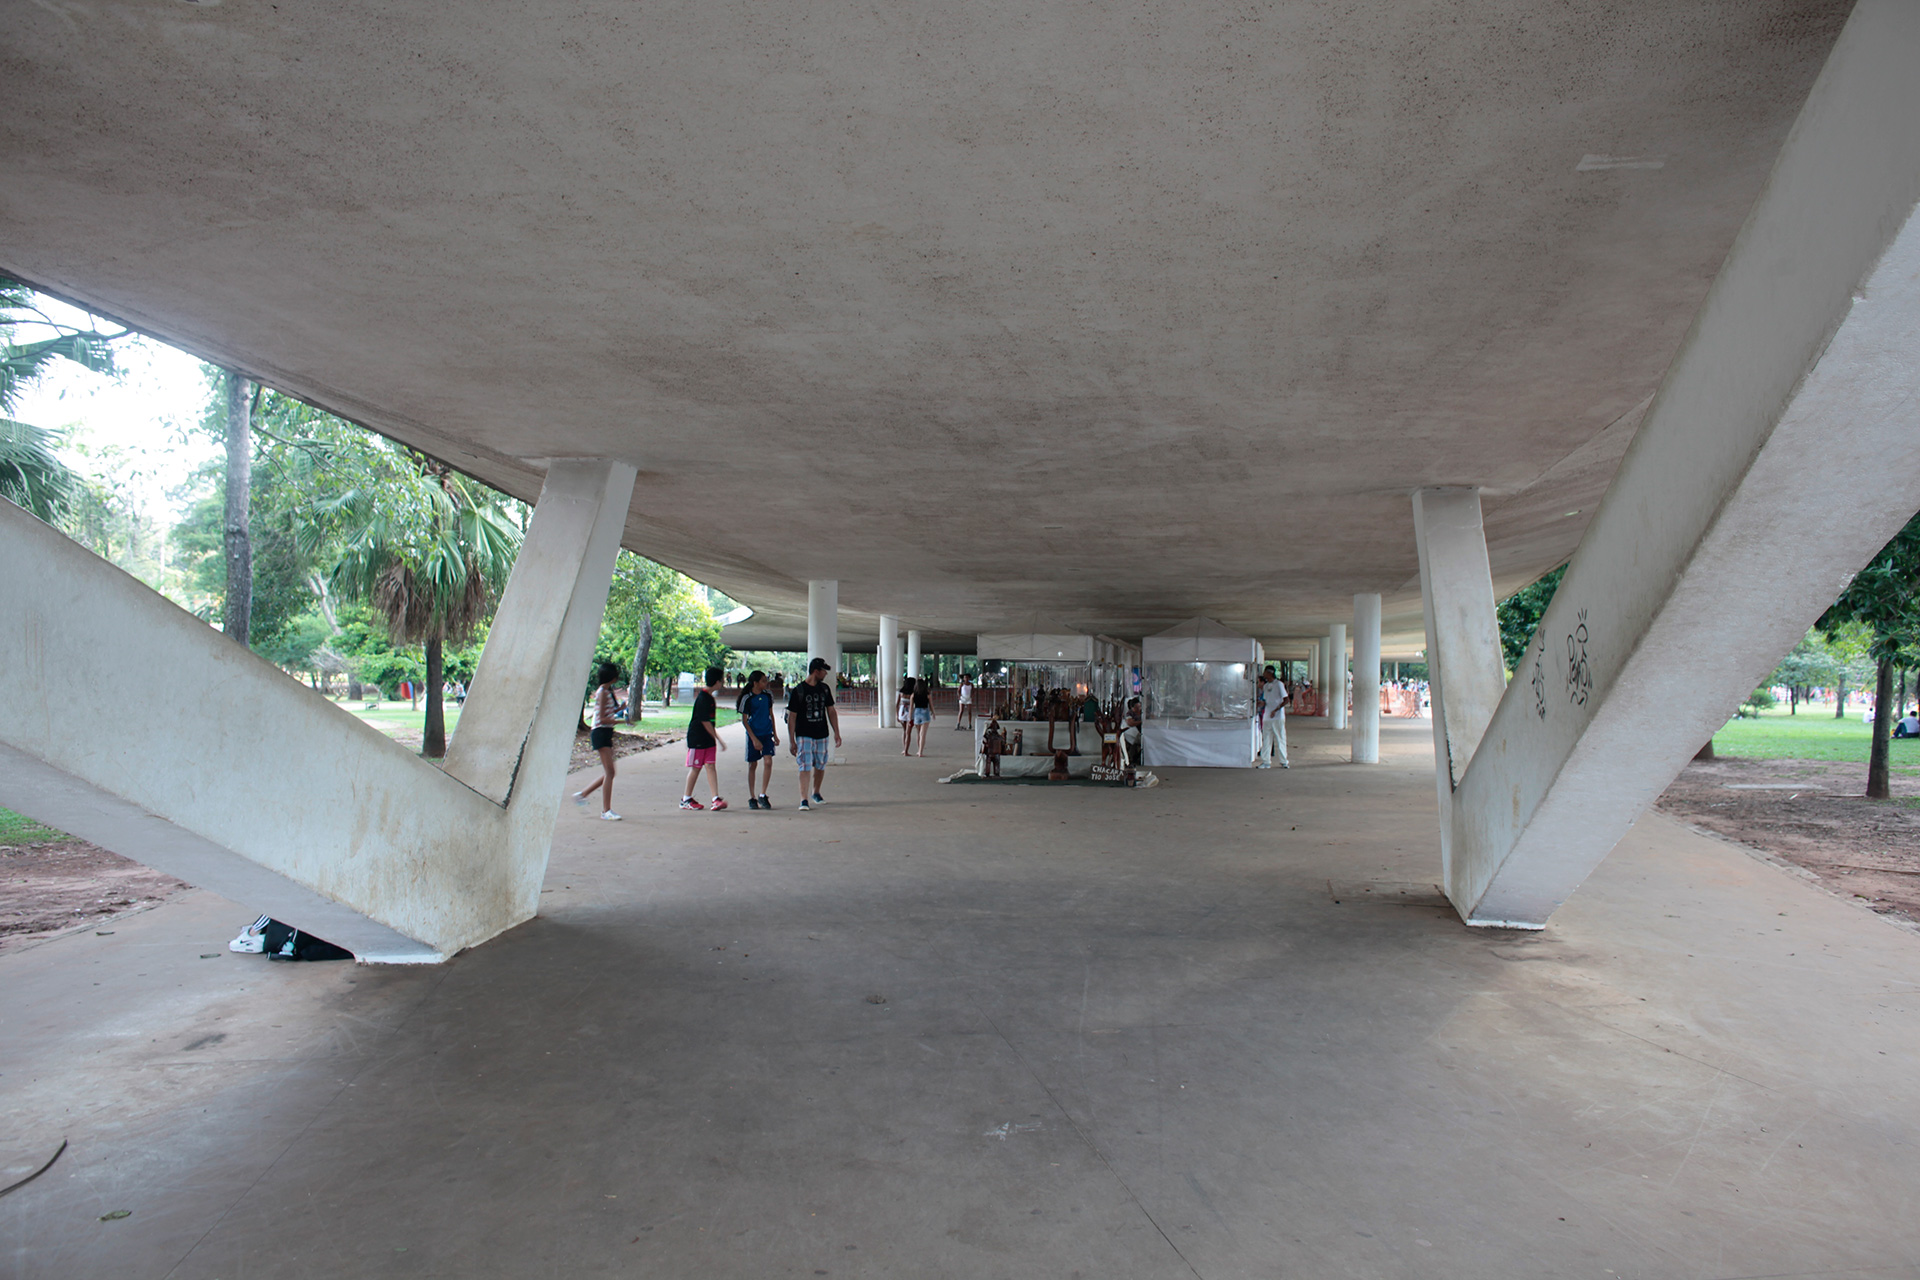 ブラジル サンパウロにある イビラプエラ公園 のオスカー ニーマイヤーによる建築 Oh My ブログ